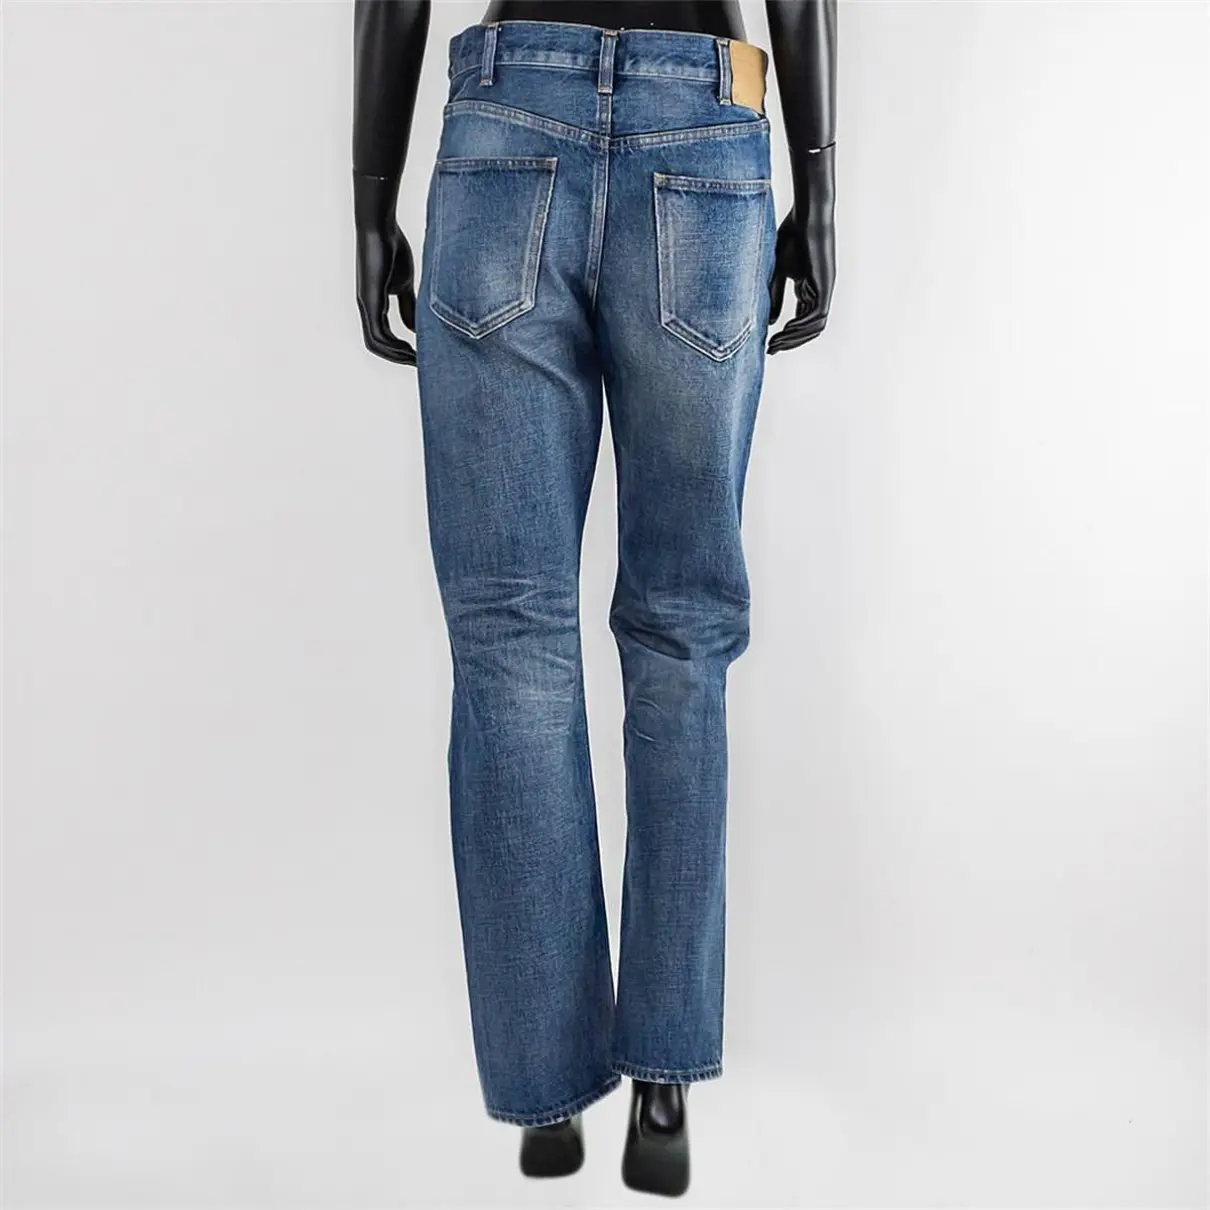 Luxury Celine Jeans Women